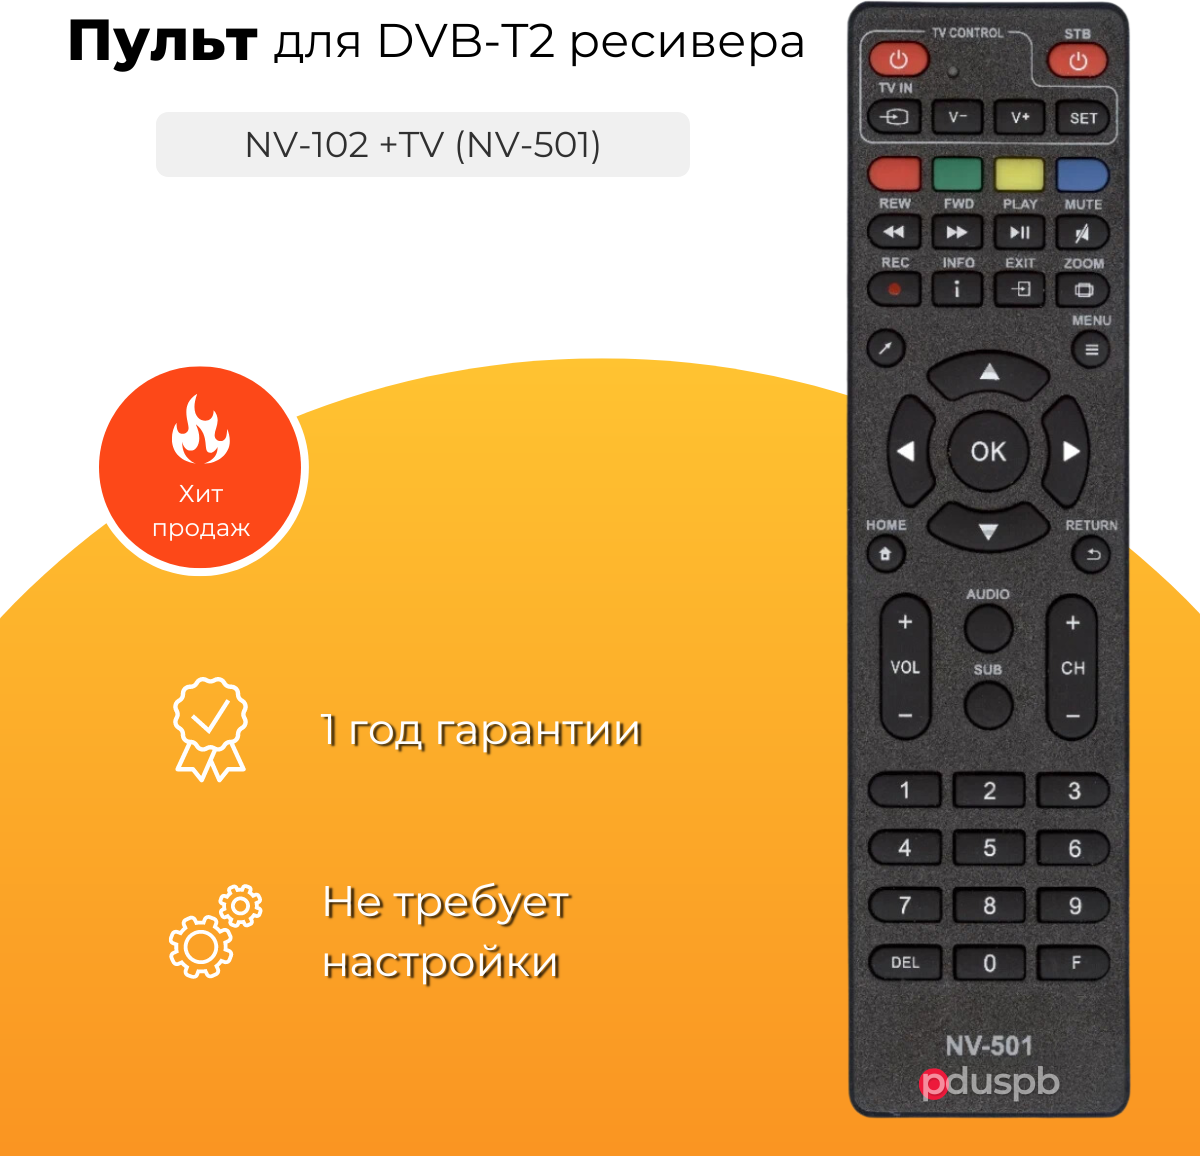 Пульт NV-102 +TV (NV-501) ic для DVB-T2 ресивера